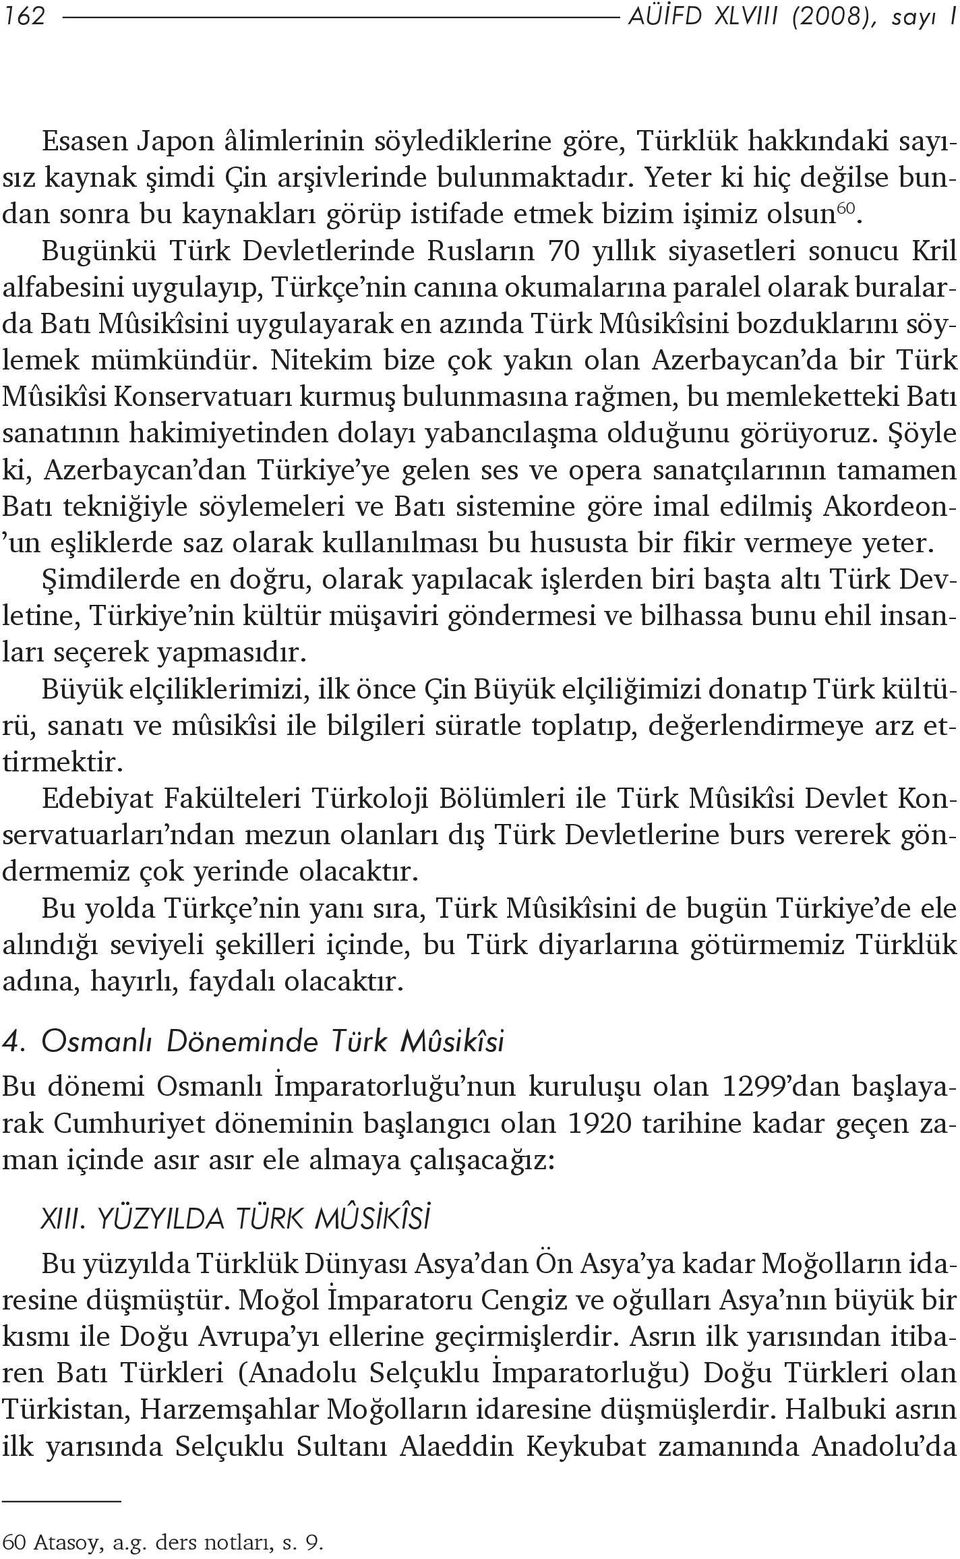 Bugünkü Türk Devletlerinde Ruslarýn 70 yýllýk siyasetleri sonucu Kril alfabesini uygulayýp, Türkçe nin canýna okumalarýna paralel olarak buralarda Batý Mûsikîsini uygulayarak en azýnda Türk